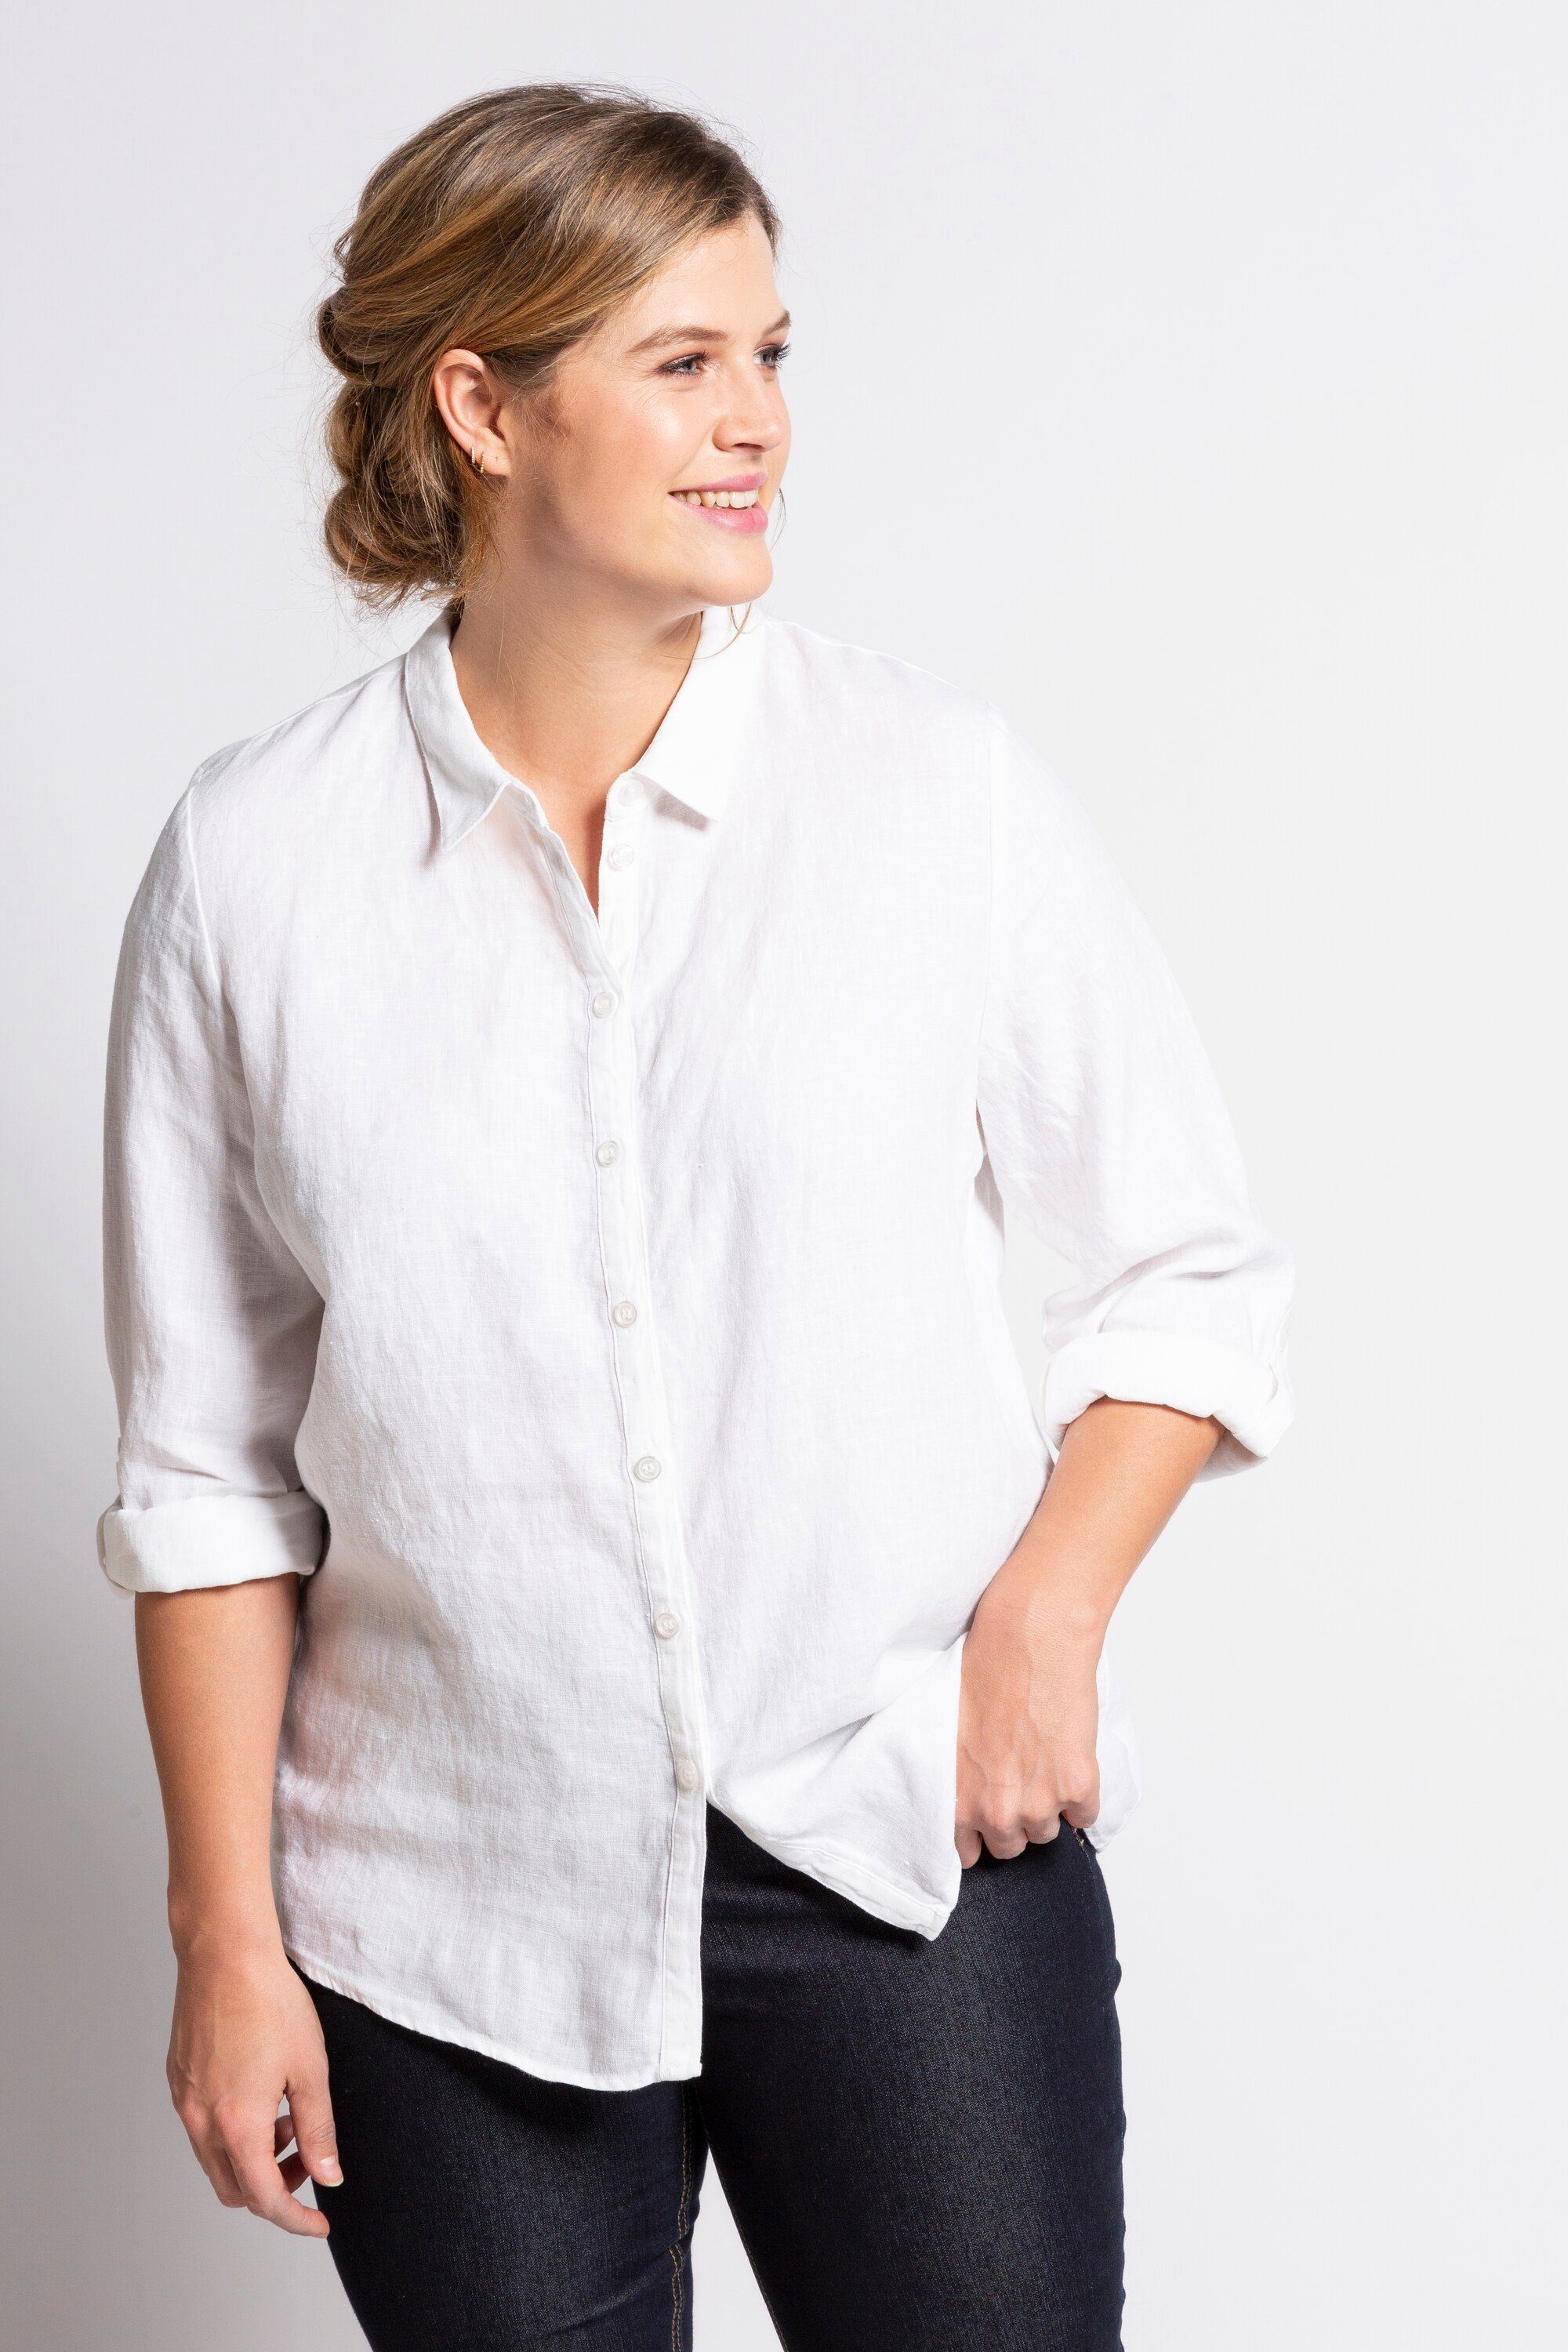 Leinen Bluse online kaufen » Bluse aus Leinen | OTTO